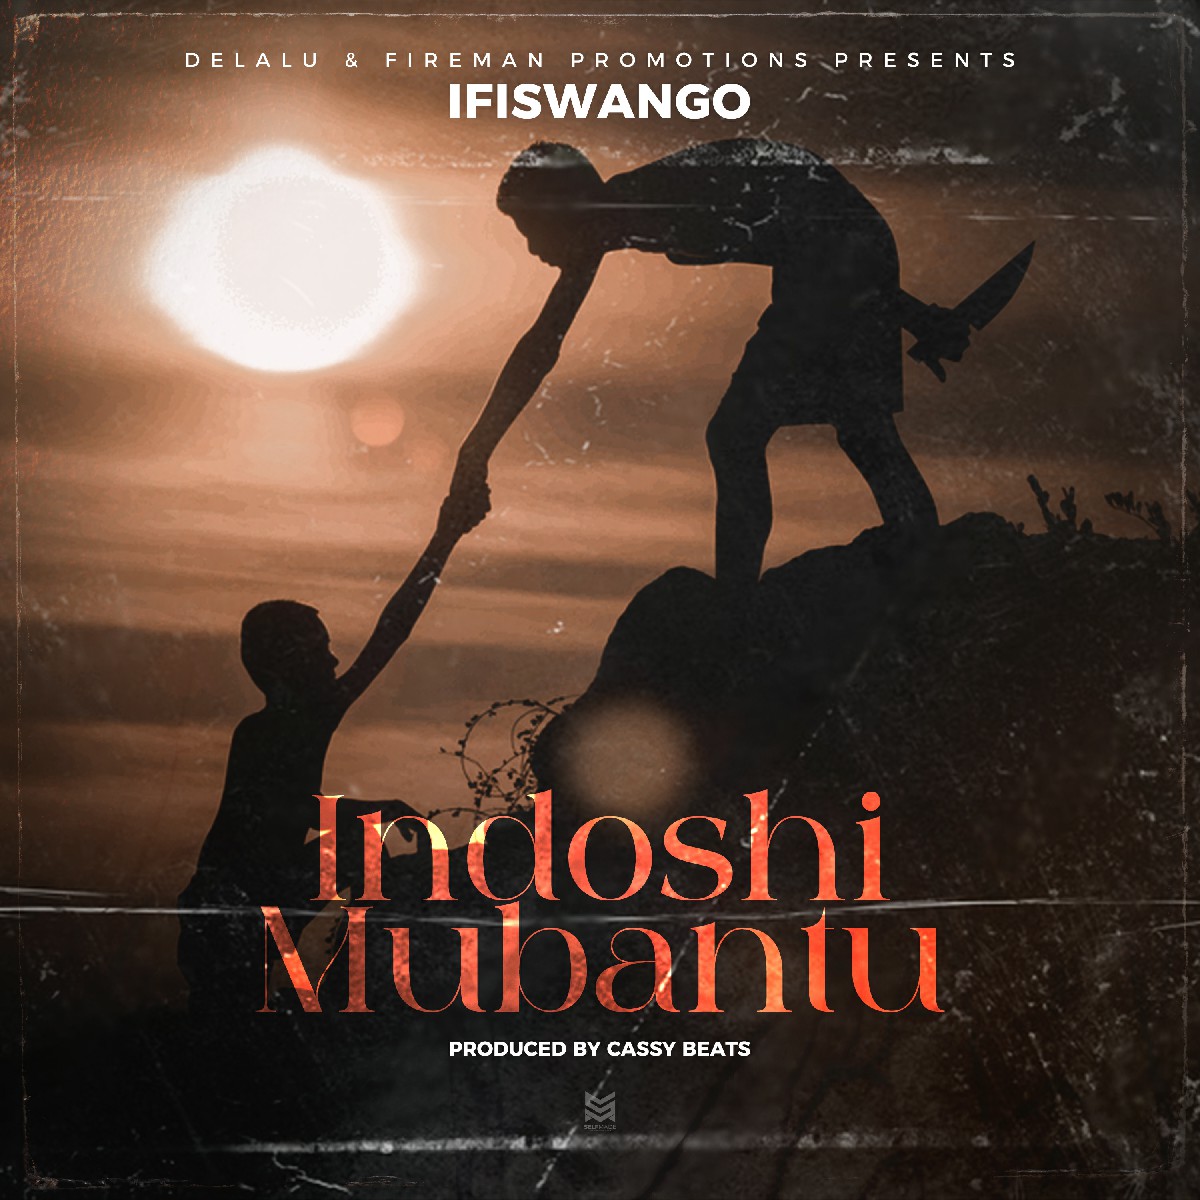 Ifiswango - Indoshi Mubantu (Prod. Cassy Beats)